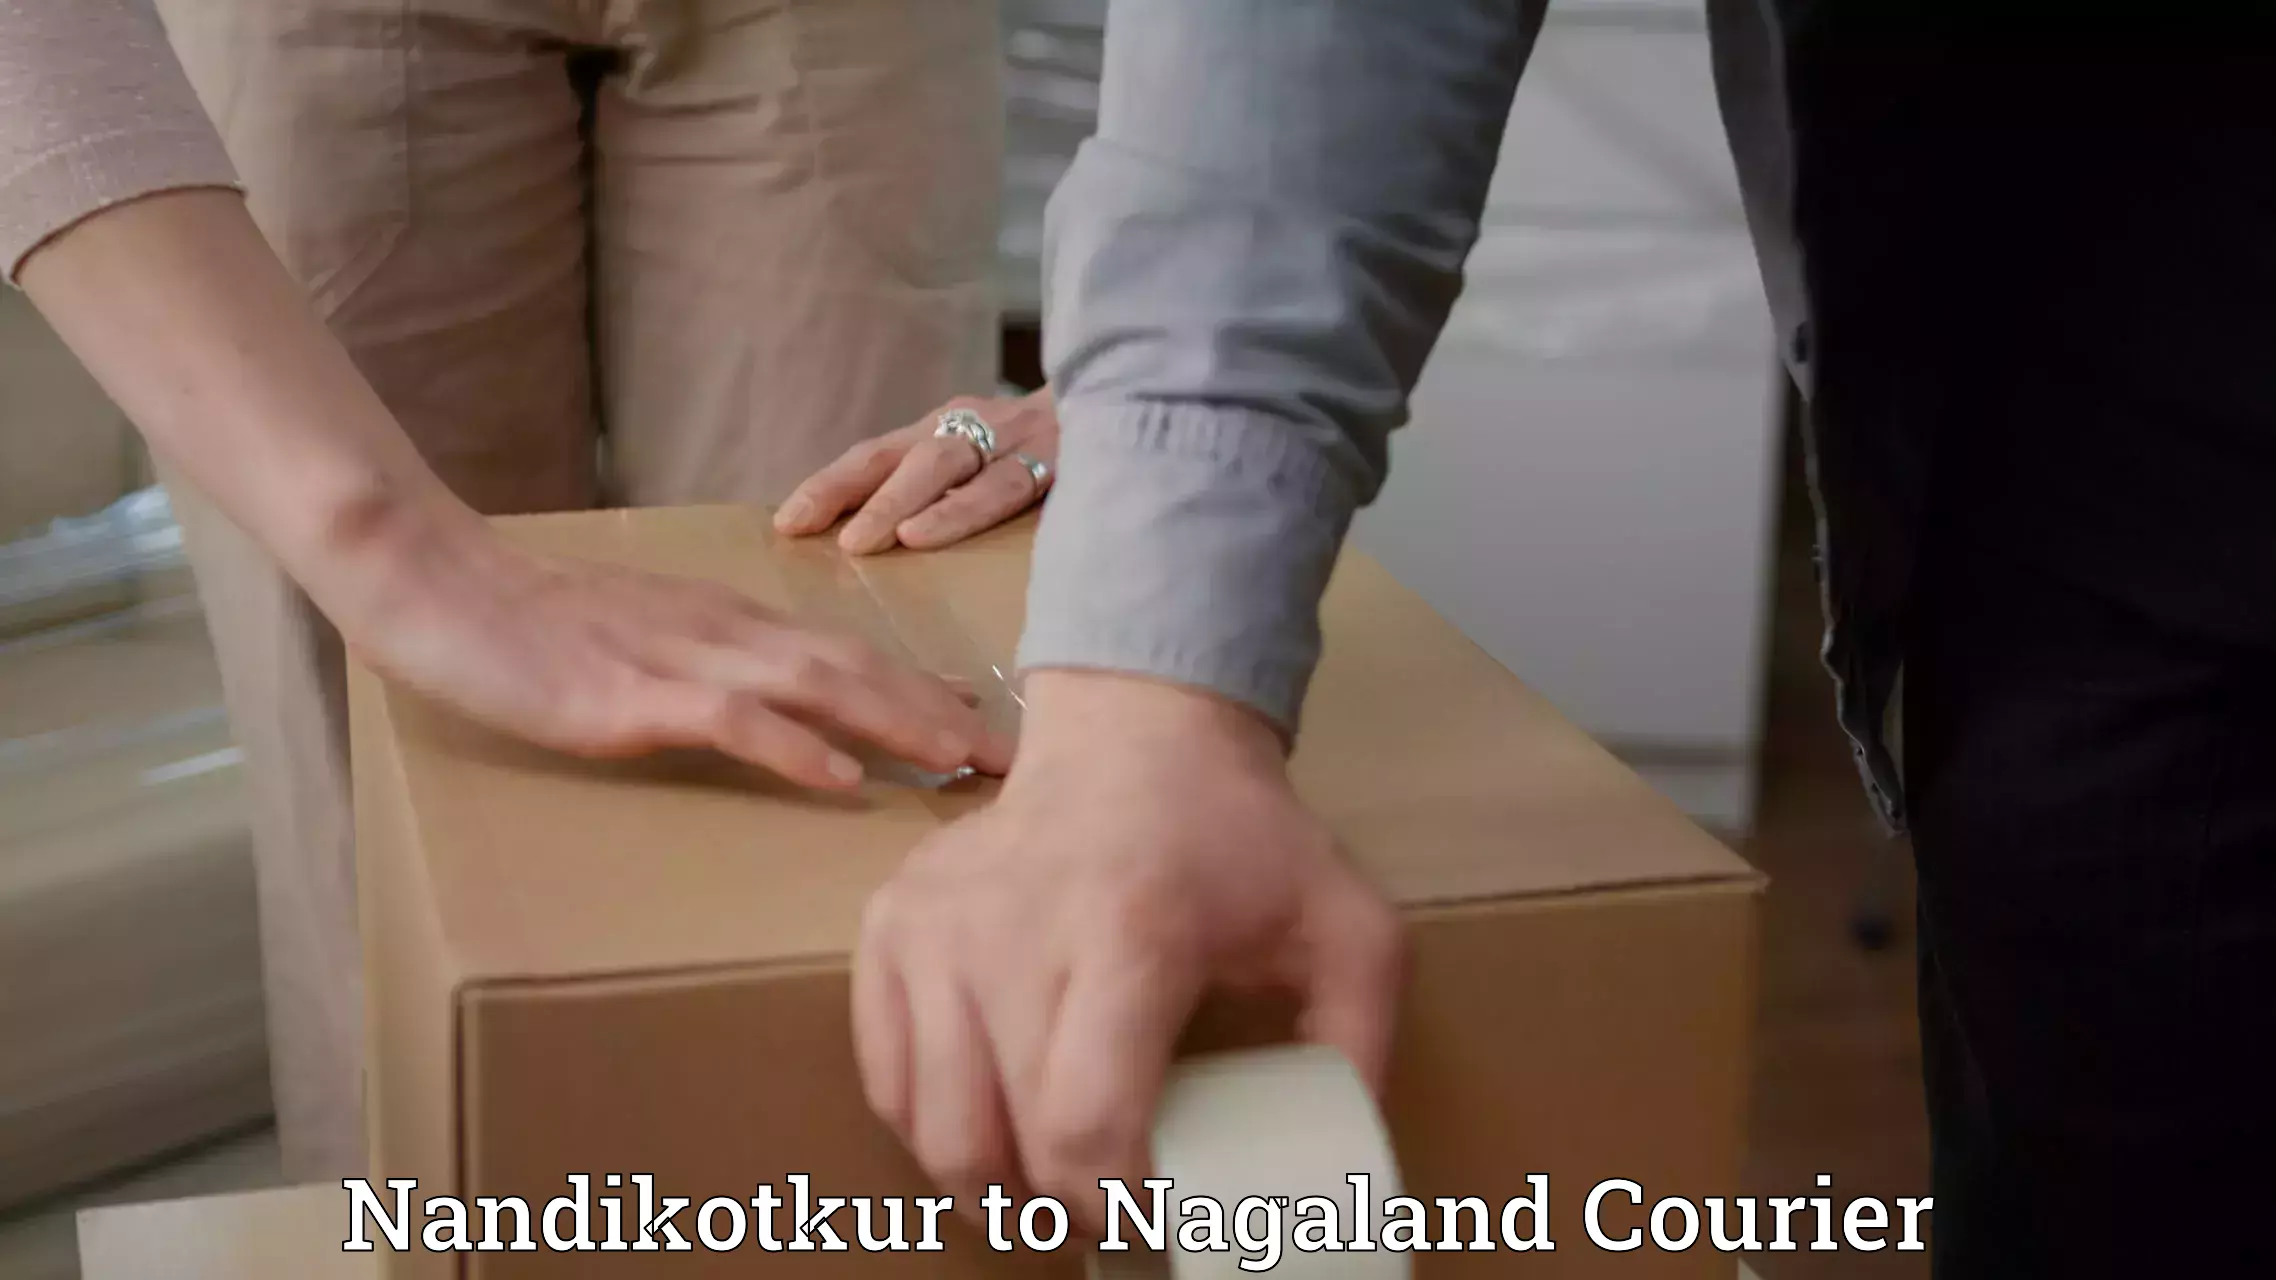 Efficient order fulfillment Nandikotkur to NIT Nagaland